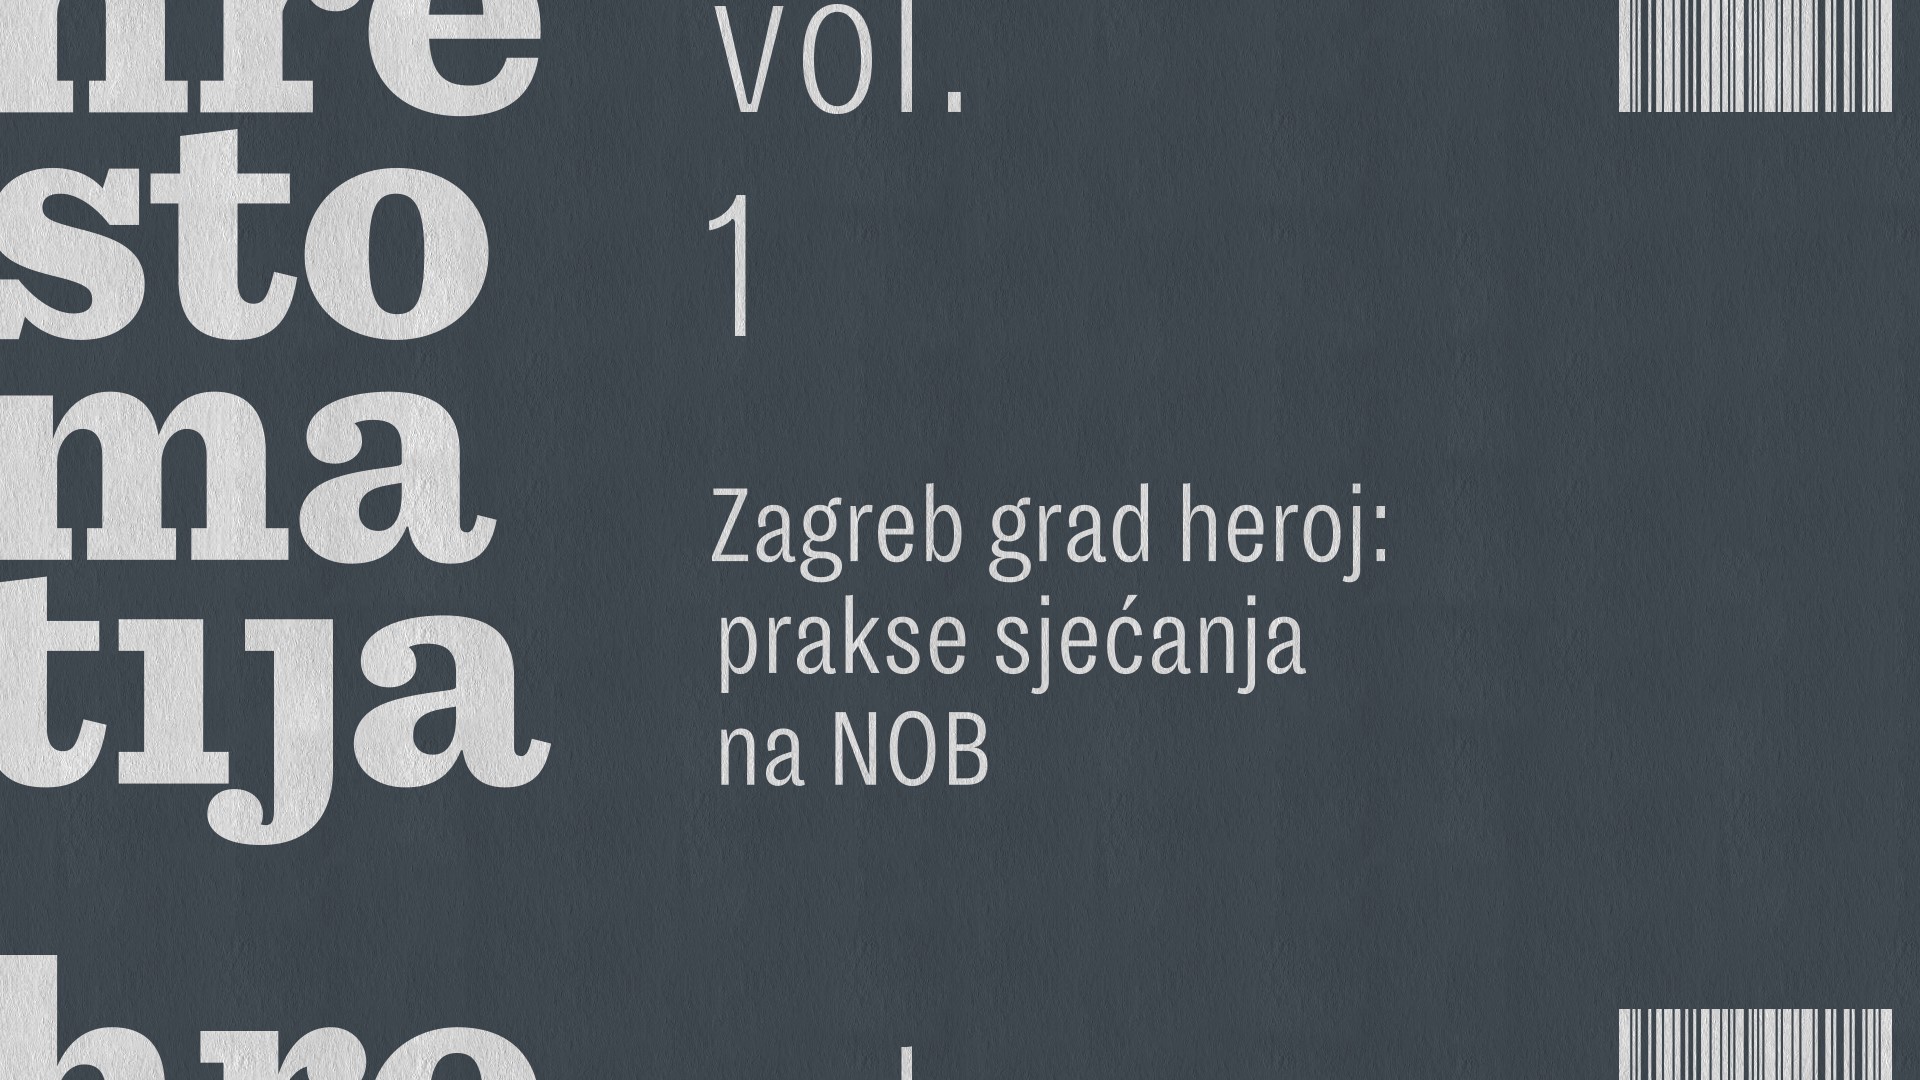 Zagreb grad heroj: prakse sjećanja na NOB